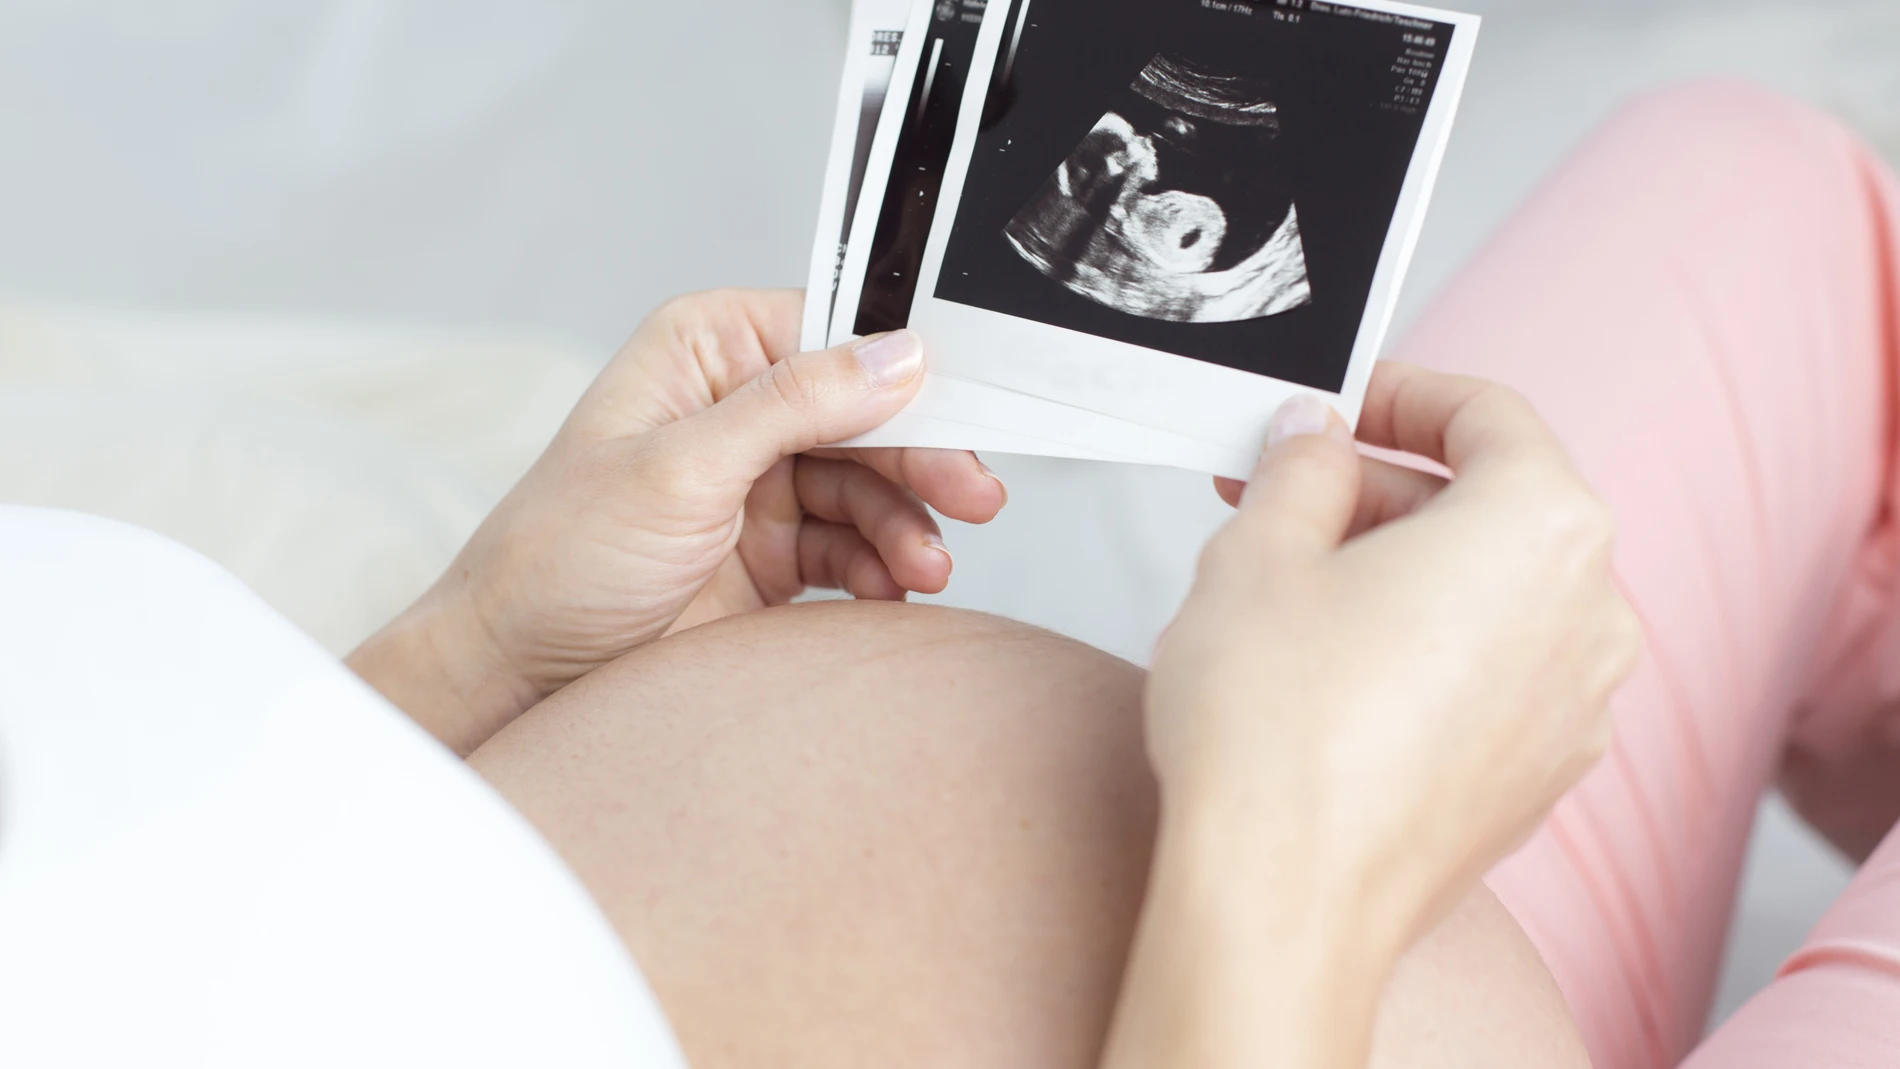 Entre el 50 y el 70% de los embriones tienen una anomalía cromosómica que provoca infertilidad y abortos espontáneos